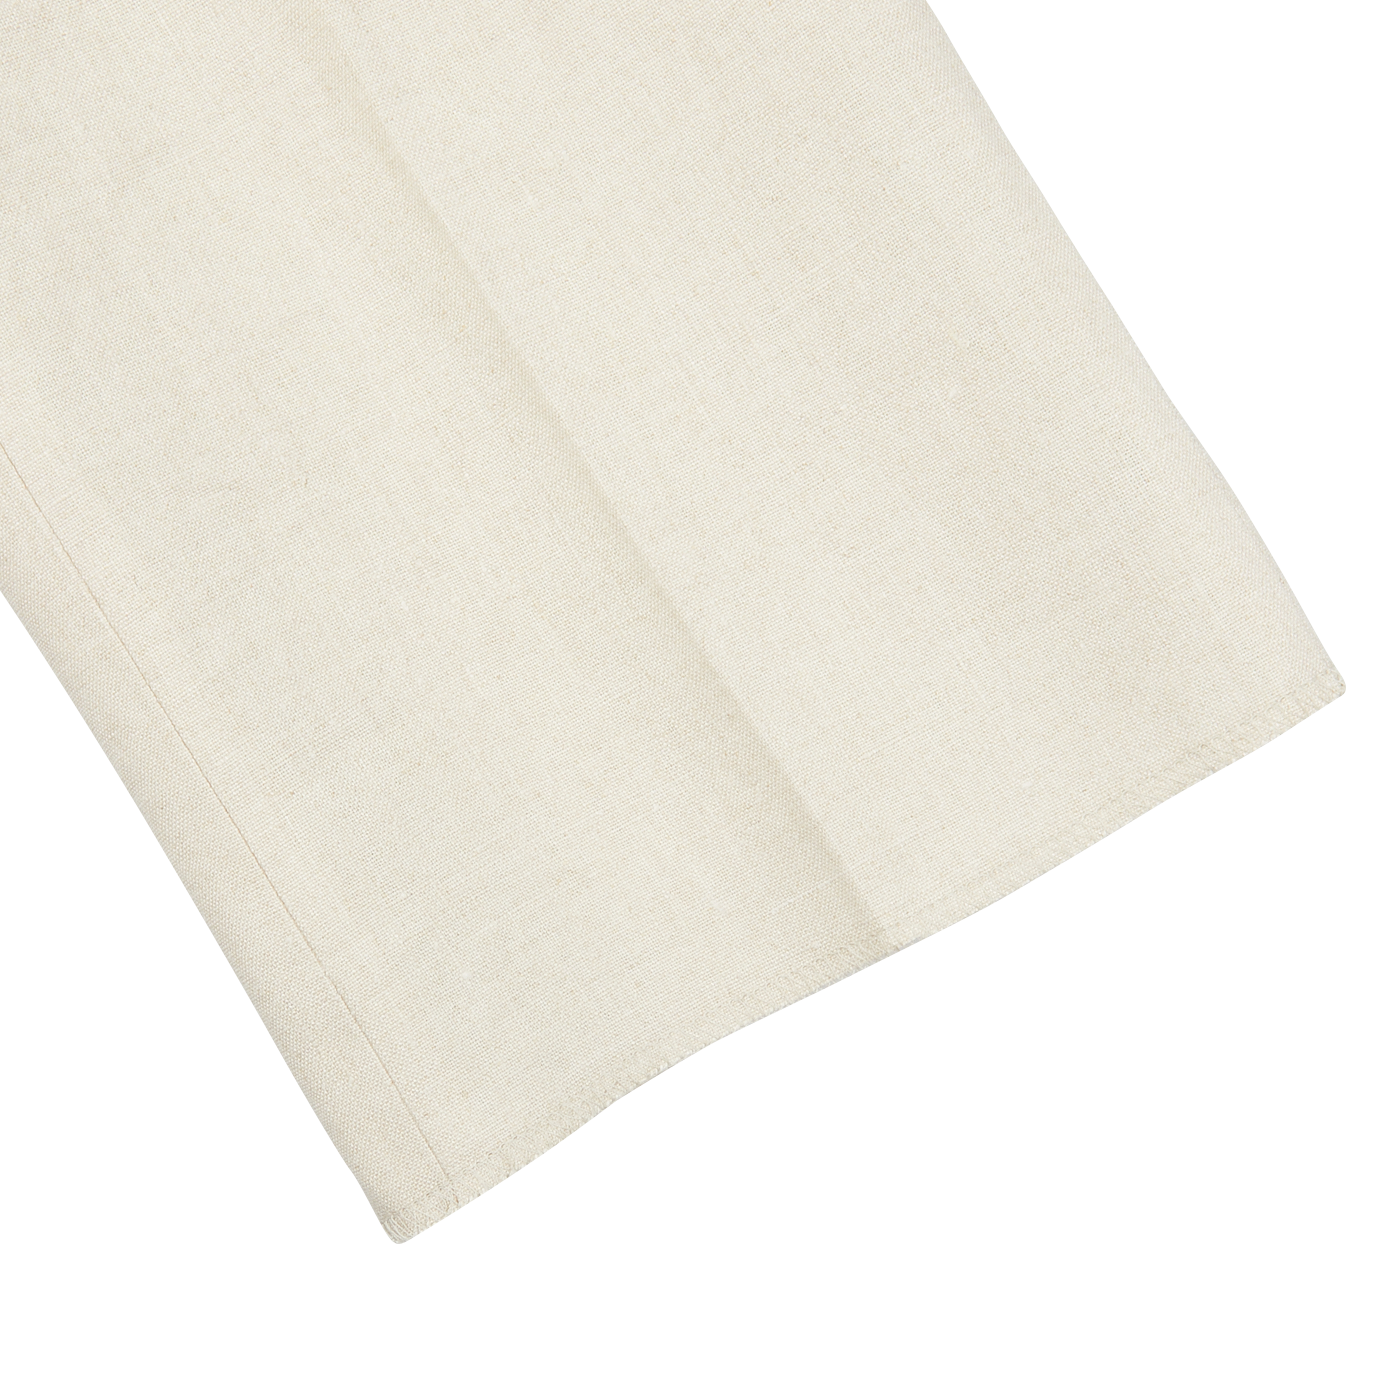 A light beige pure linen napkin on a flat surface. (Brand Name: Baltzar Sartorial)